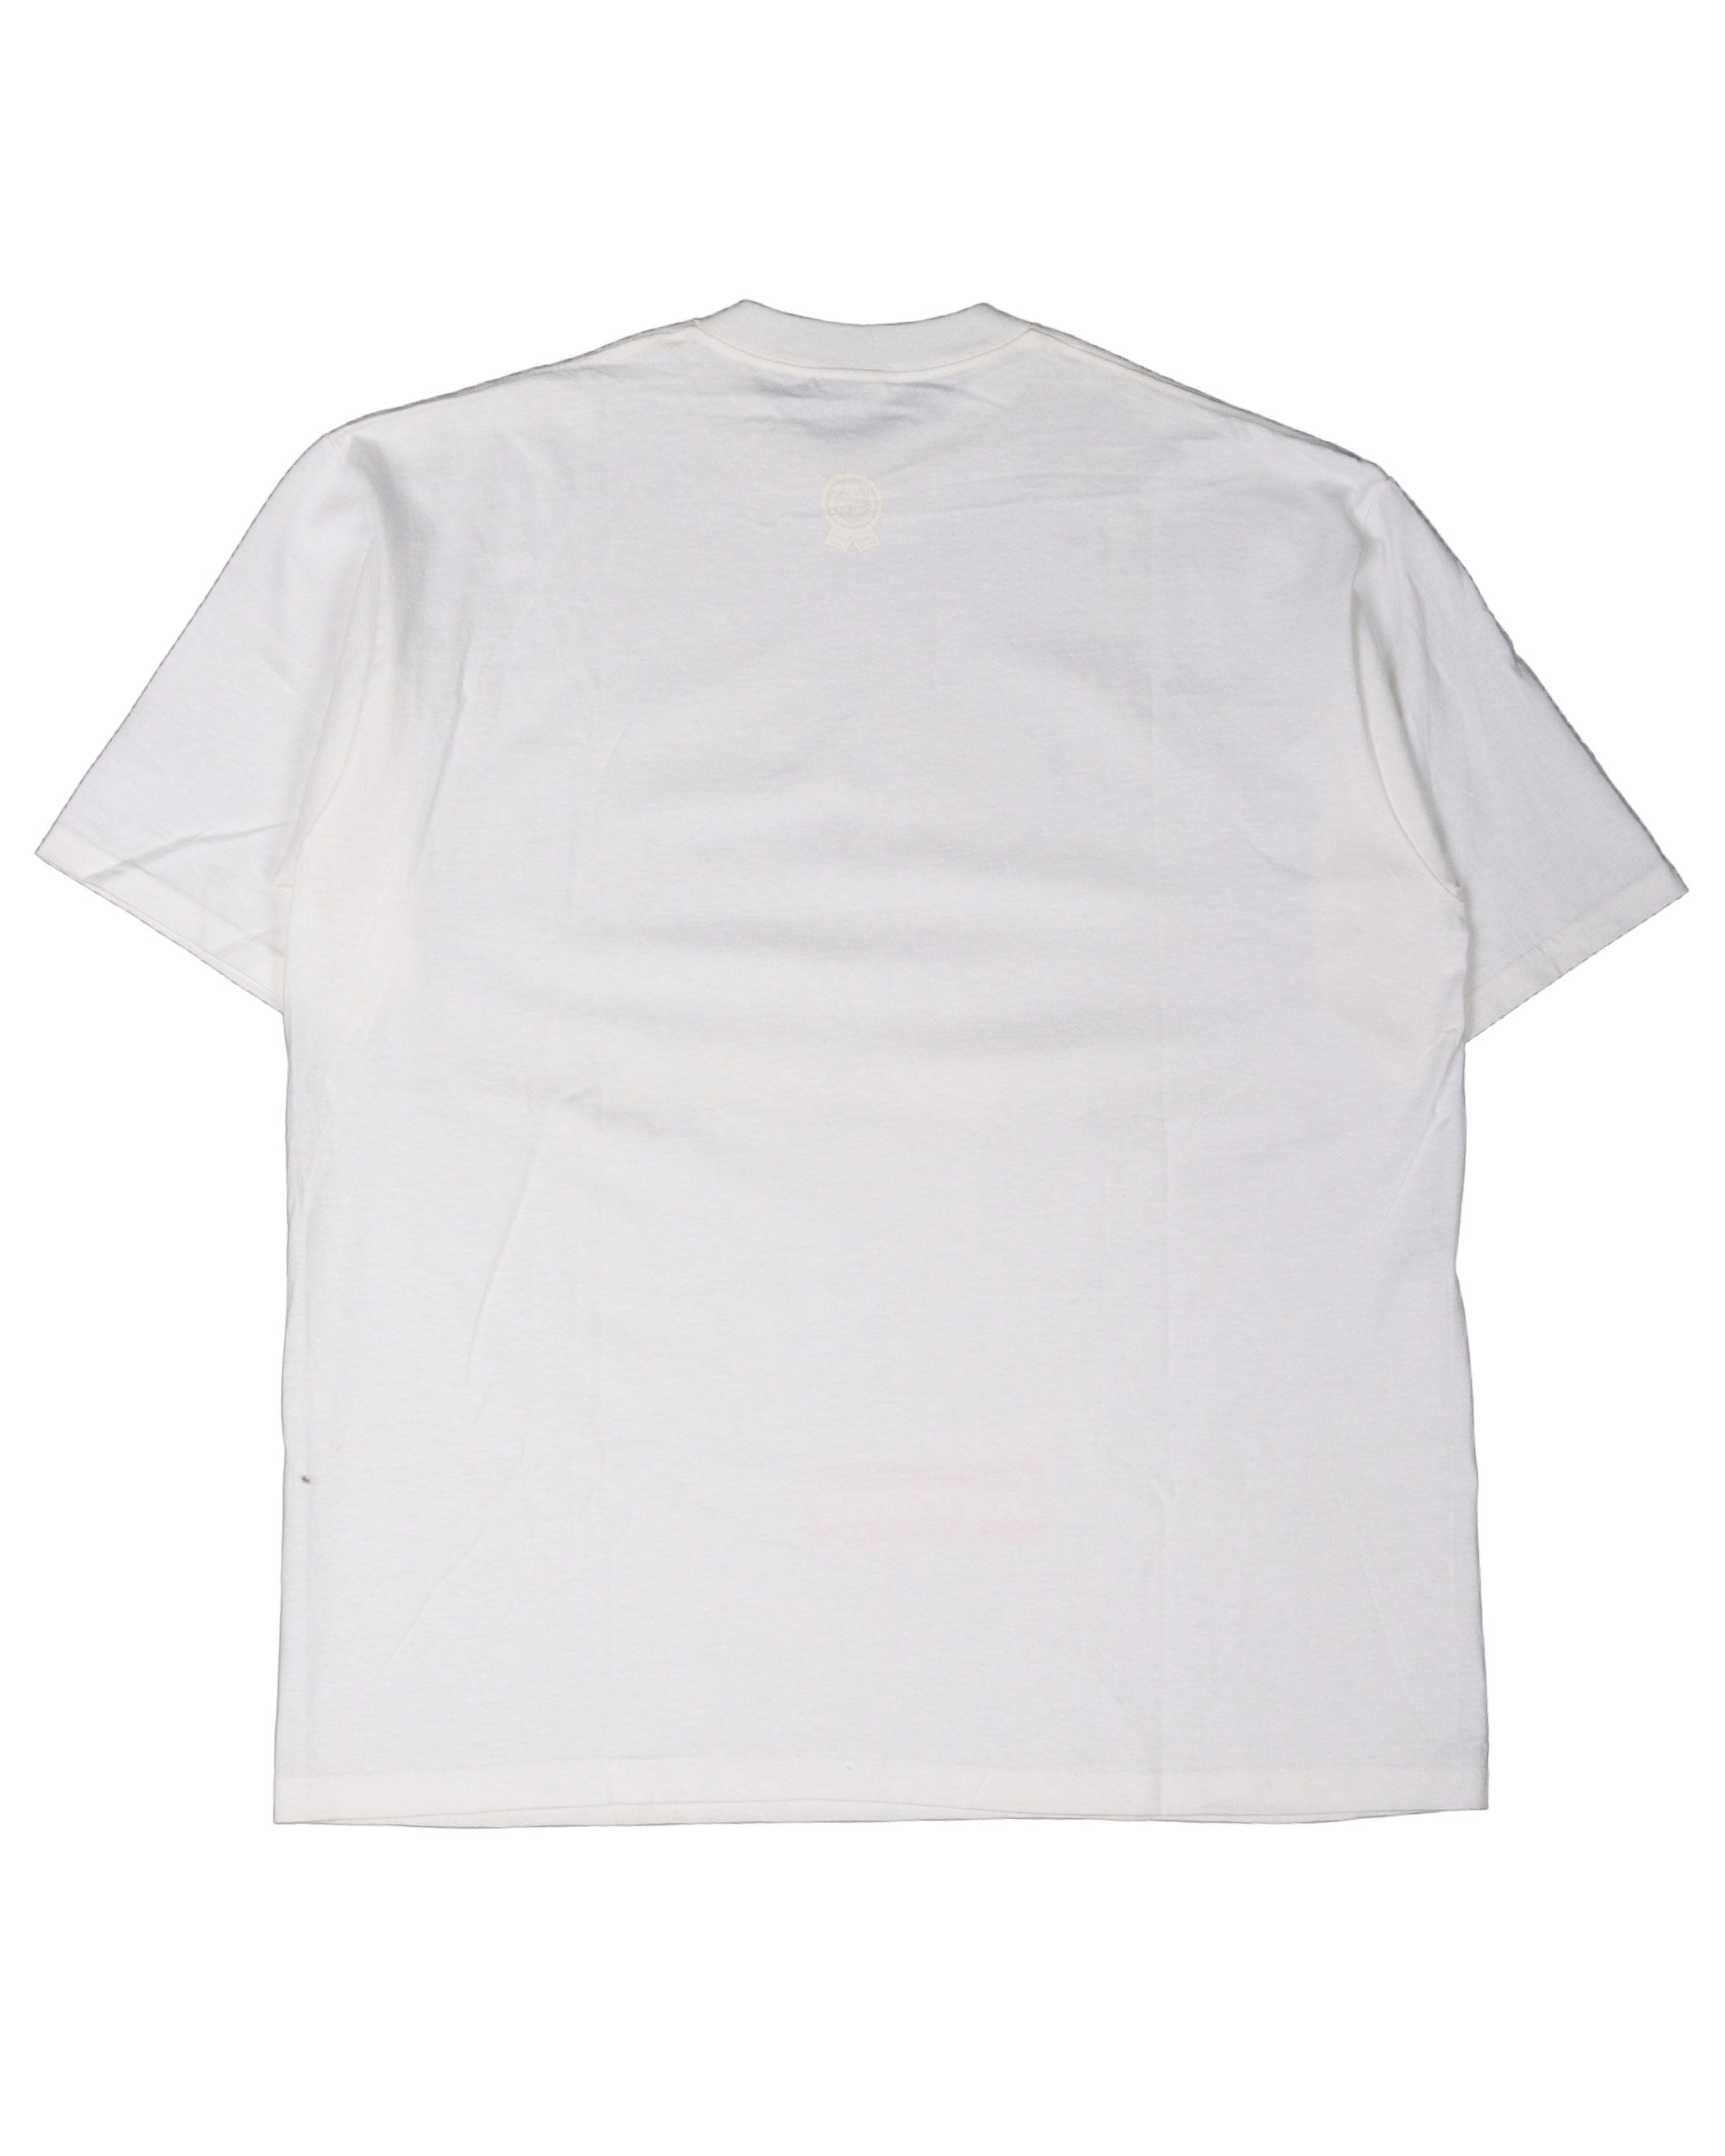 SS04 Kate Moss T-Shirt